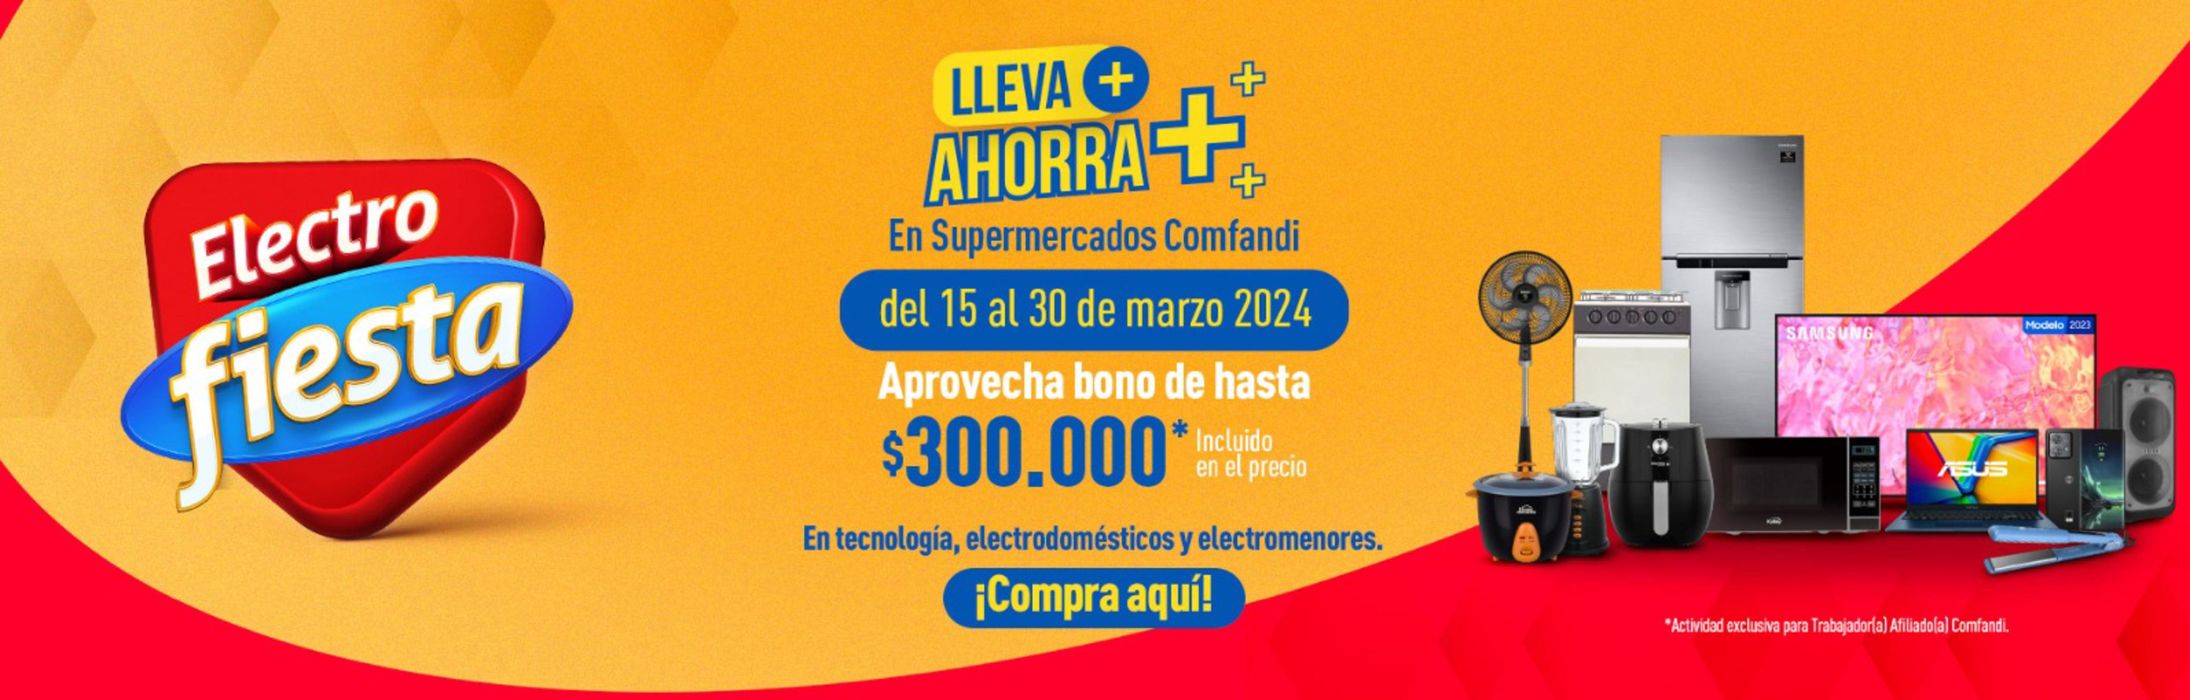 Catálogo Comfandi en Tuluá | Lleva ahorro electro fiesta | 27/3/2024 - 30/3/2024